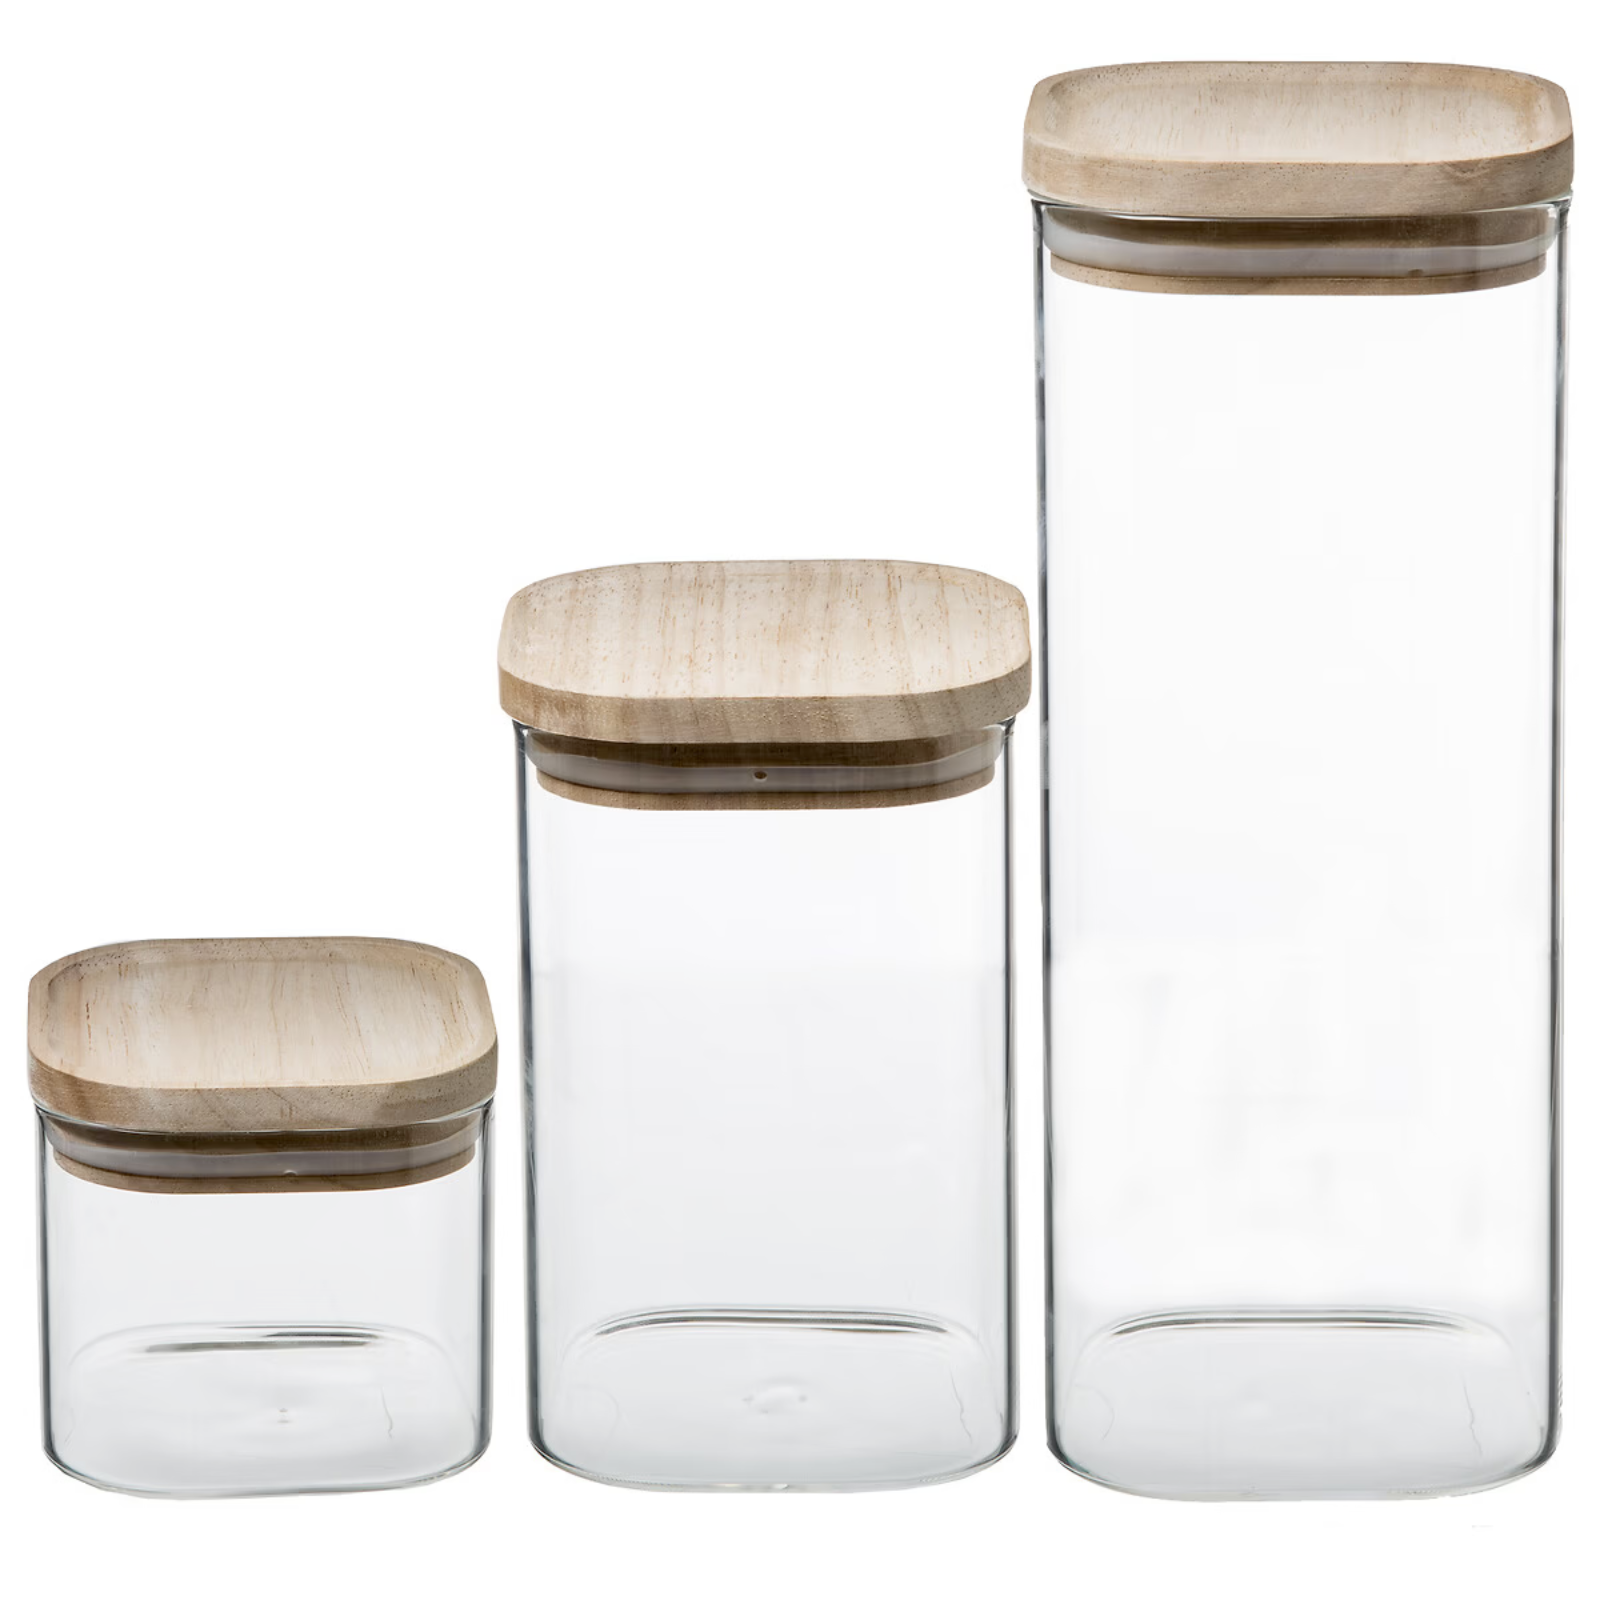 Set 3 barattoli contenitore da cucina in vetro impilabili con coperchio in legno